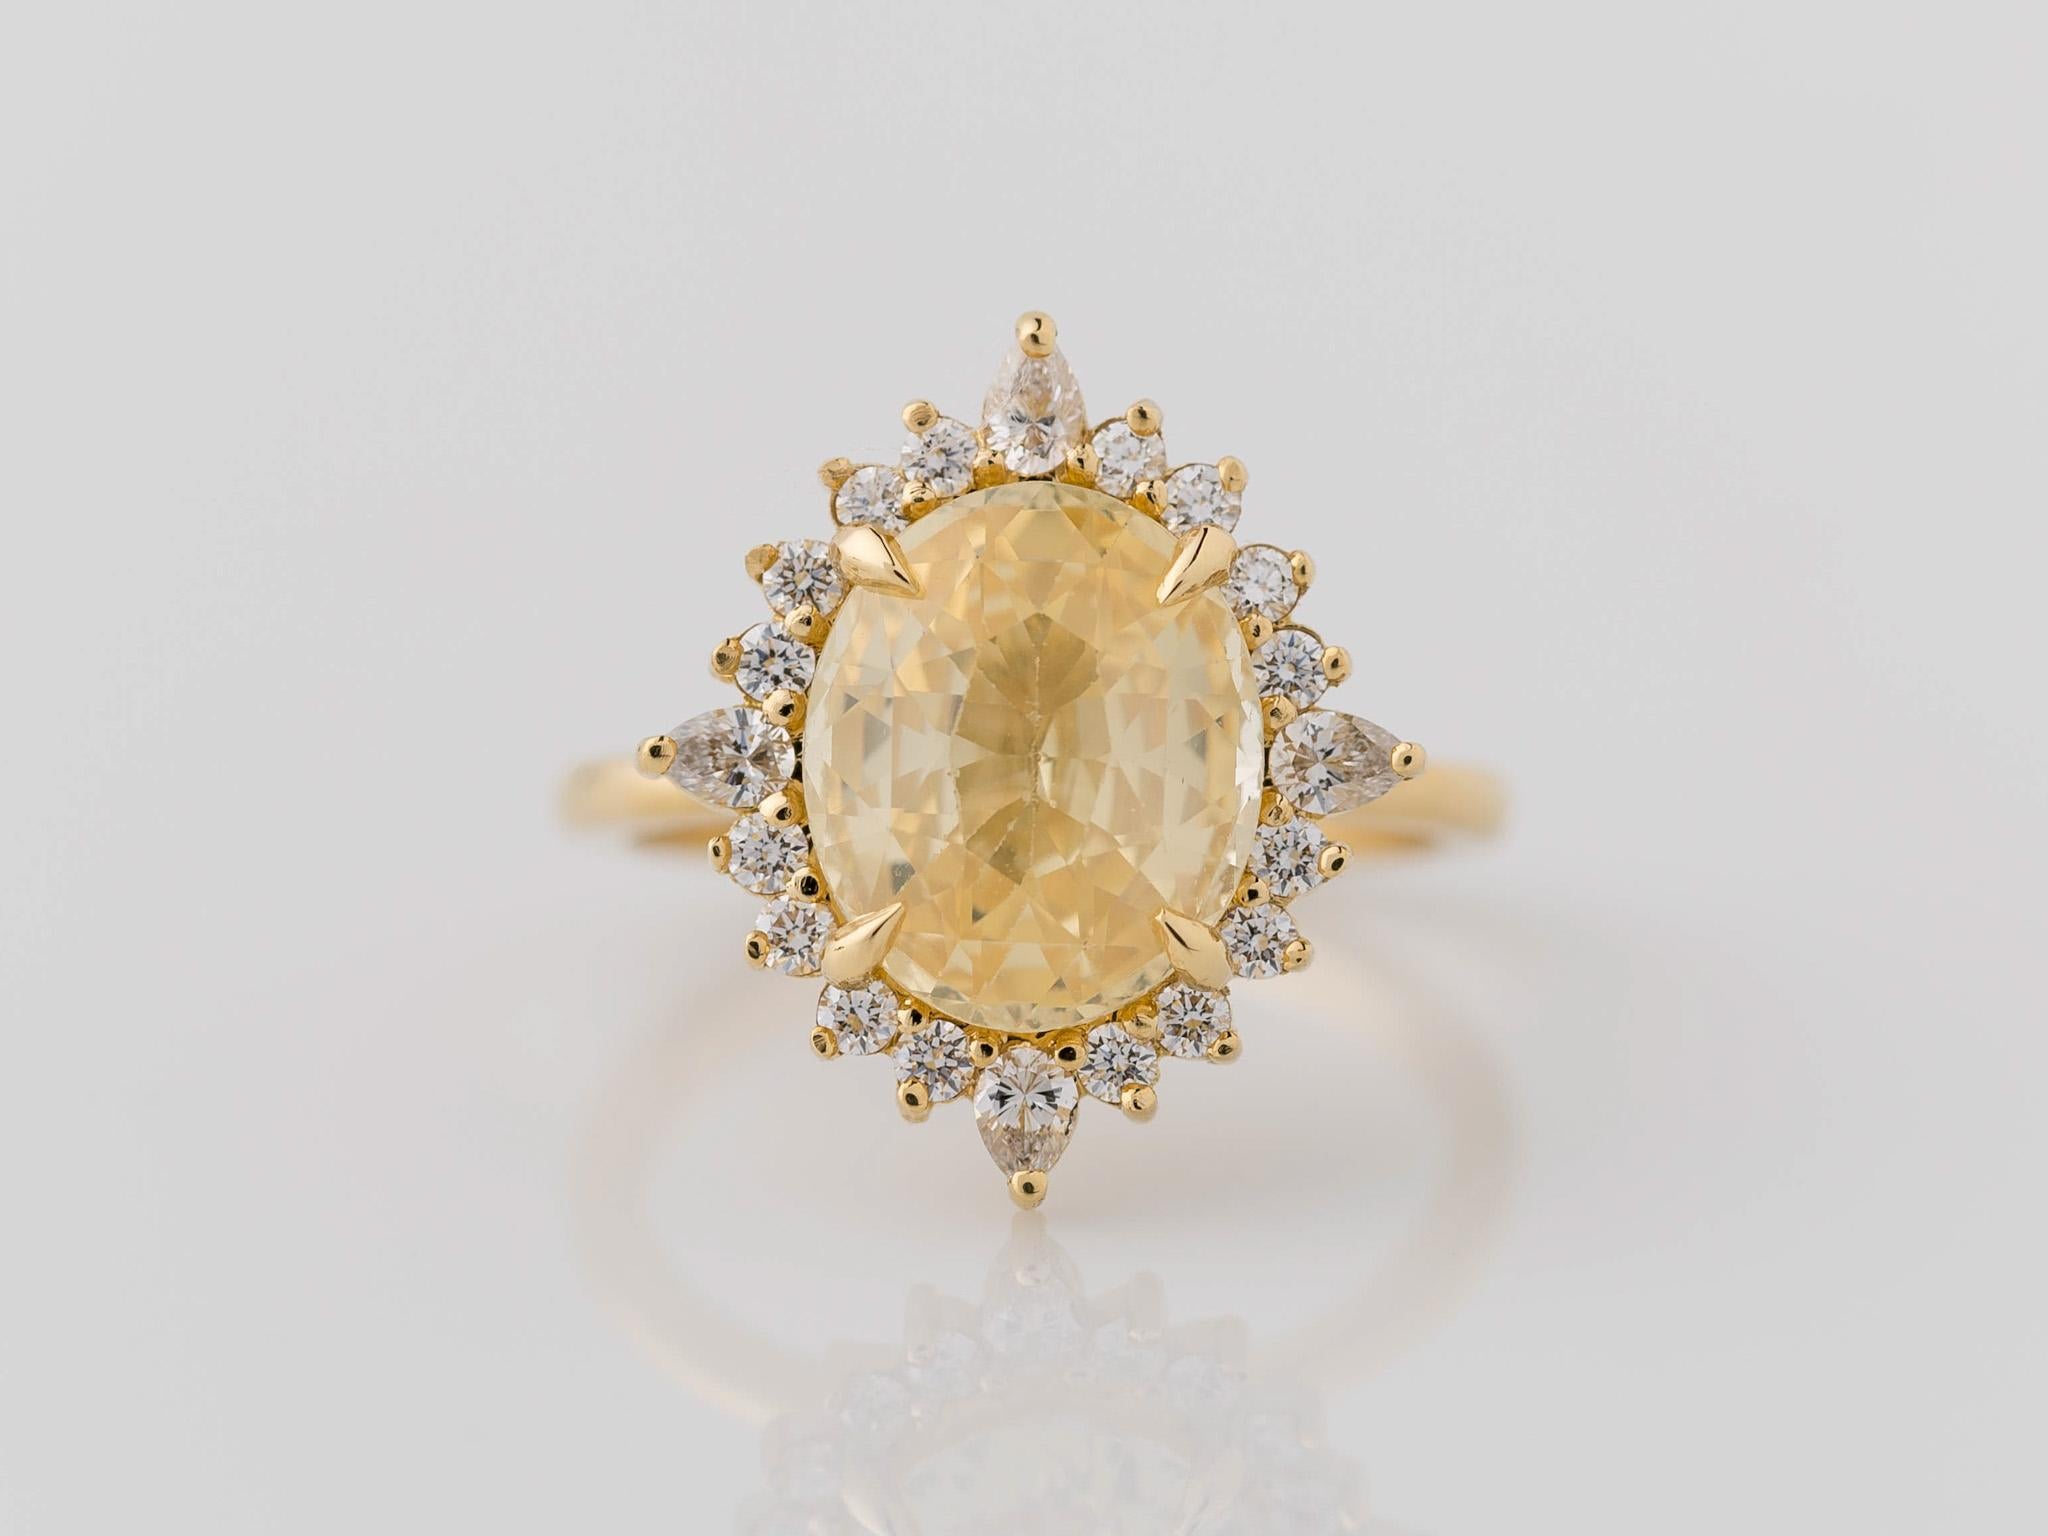 Feiern Sie den Glanz der Liebe mit diesem bezaubernden ovalen GIA-zertifizierten Verlobungsring mit einem gelben Saphir und einem Diamanten. Der leuchtend gelbe Saphir aus glänzendem 18-karätigem Gelbgold zieht die Blicke auf sich, umgeben von einer